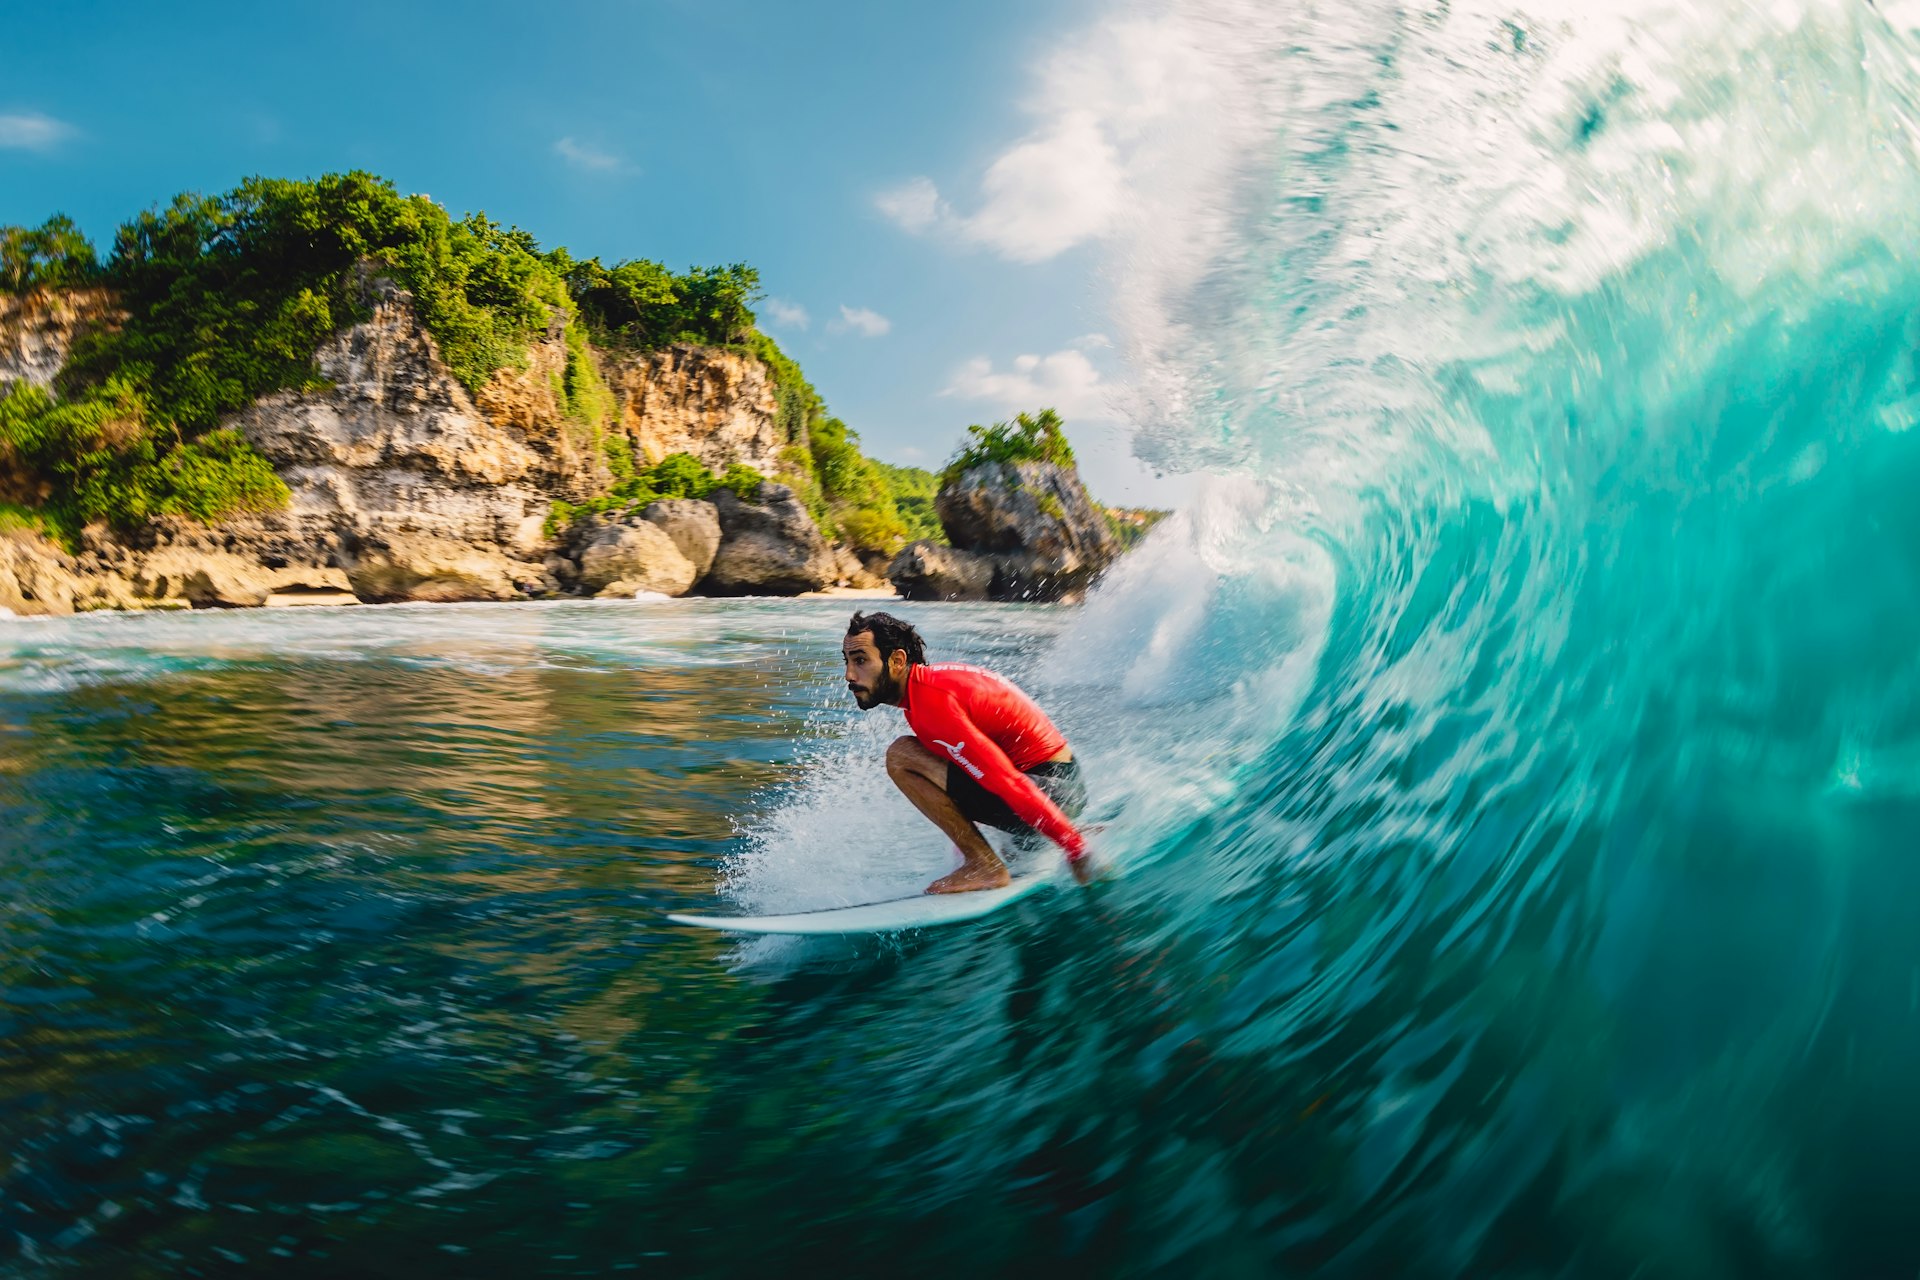 Surfer riding a barrel wave at Padang Padang on Bali, Indonesia